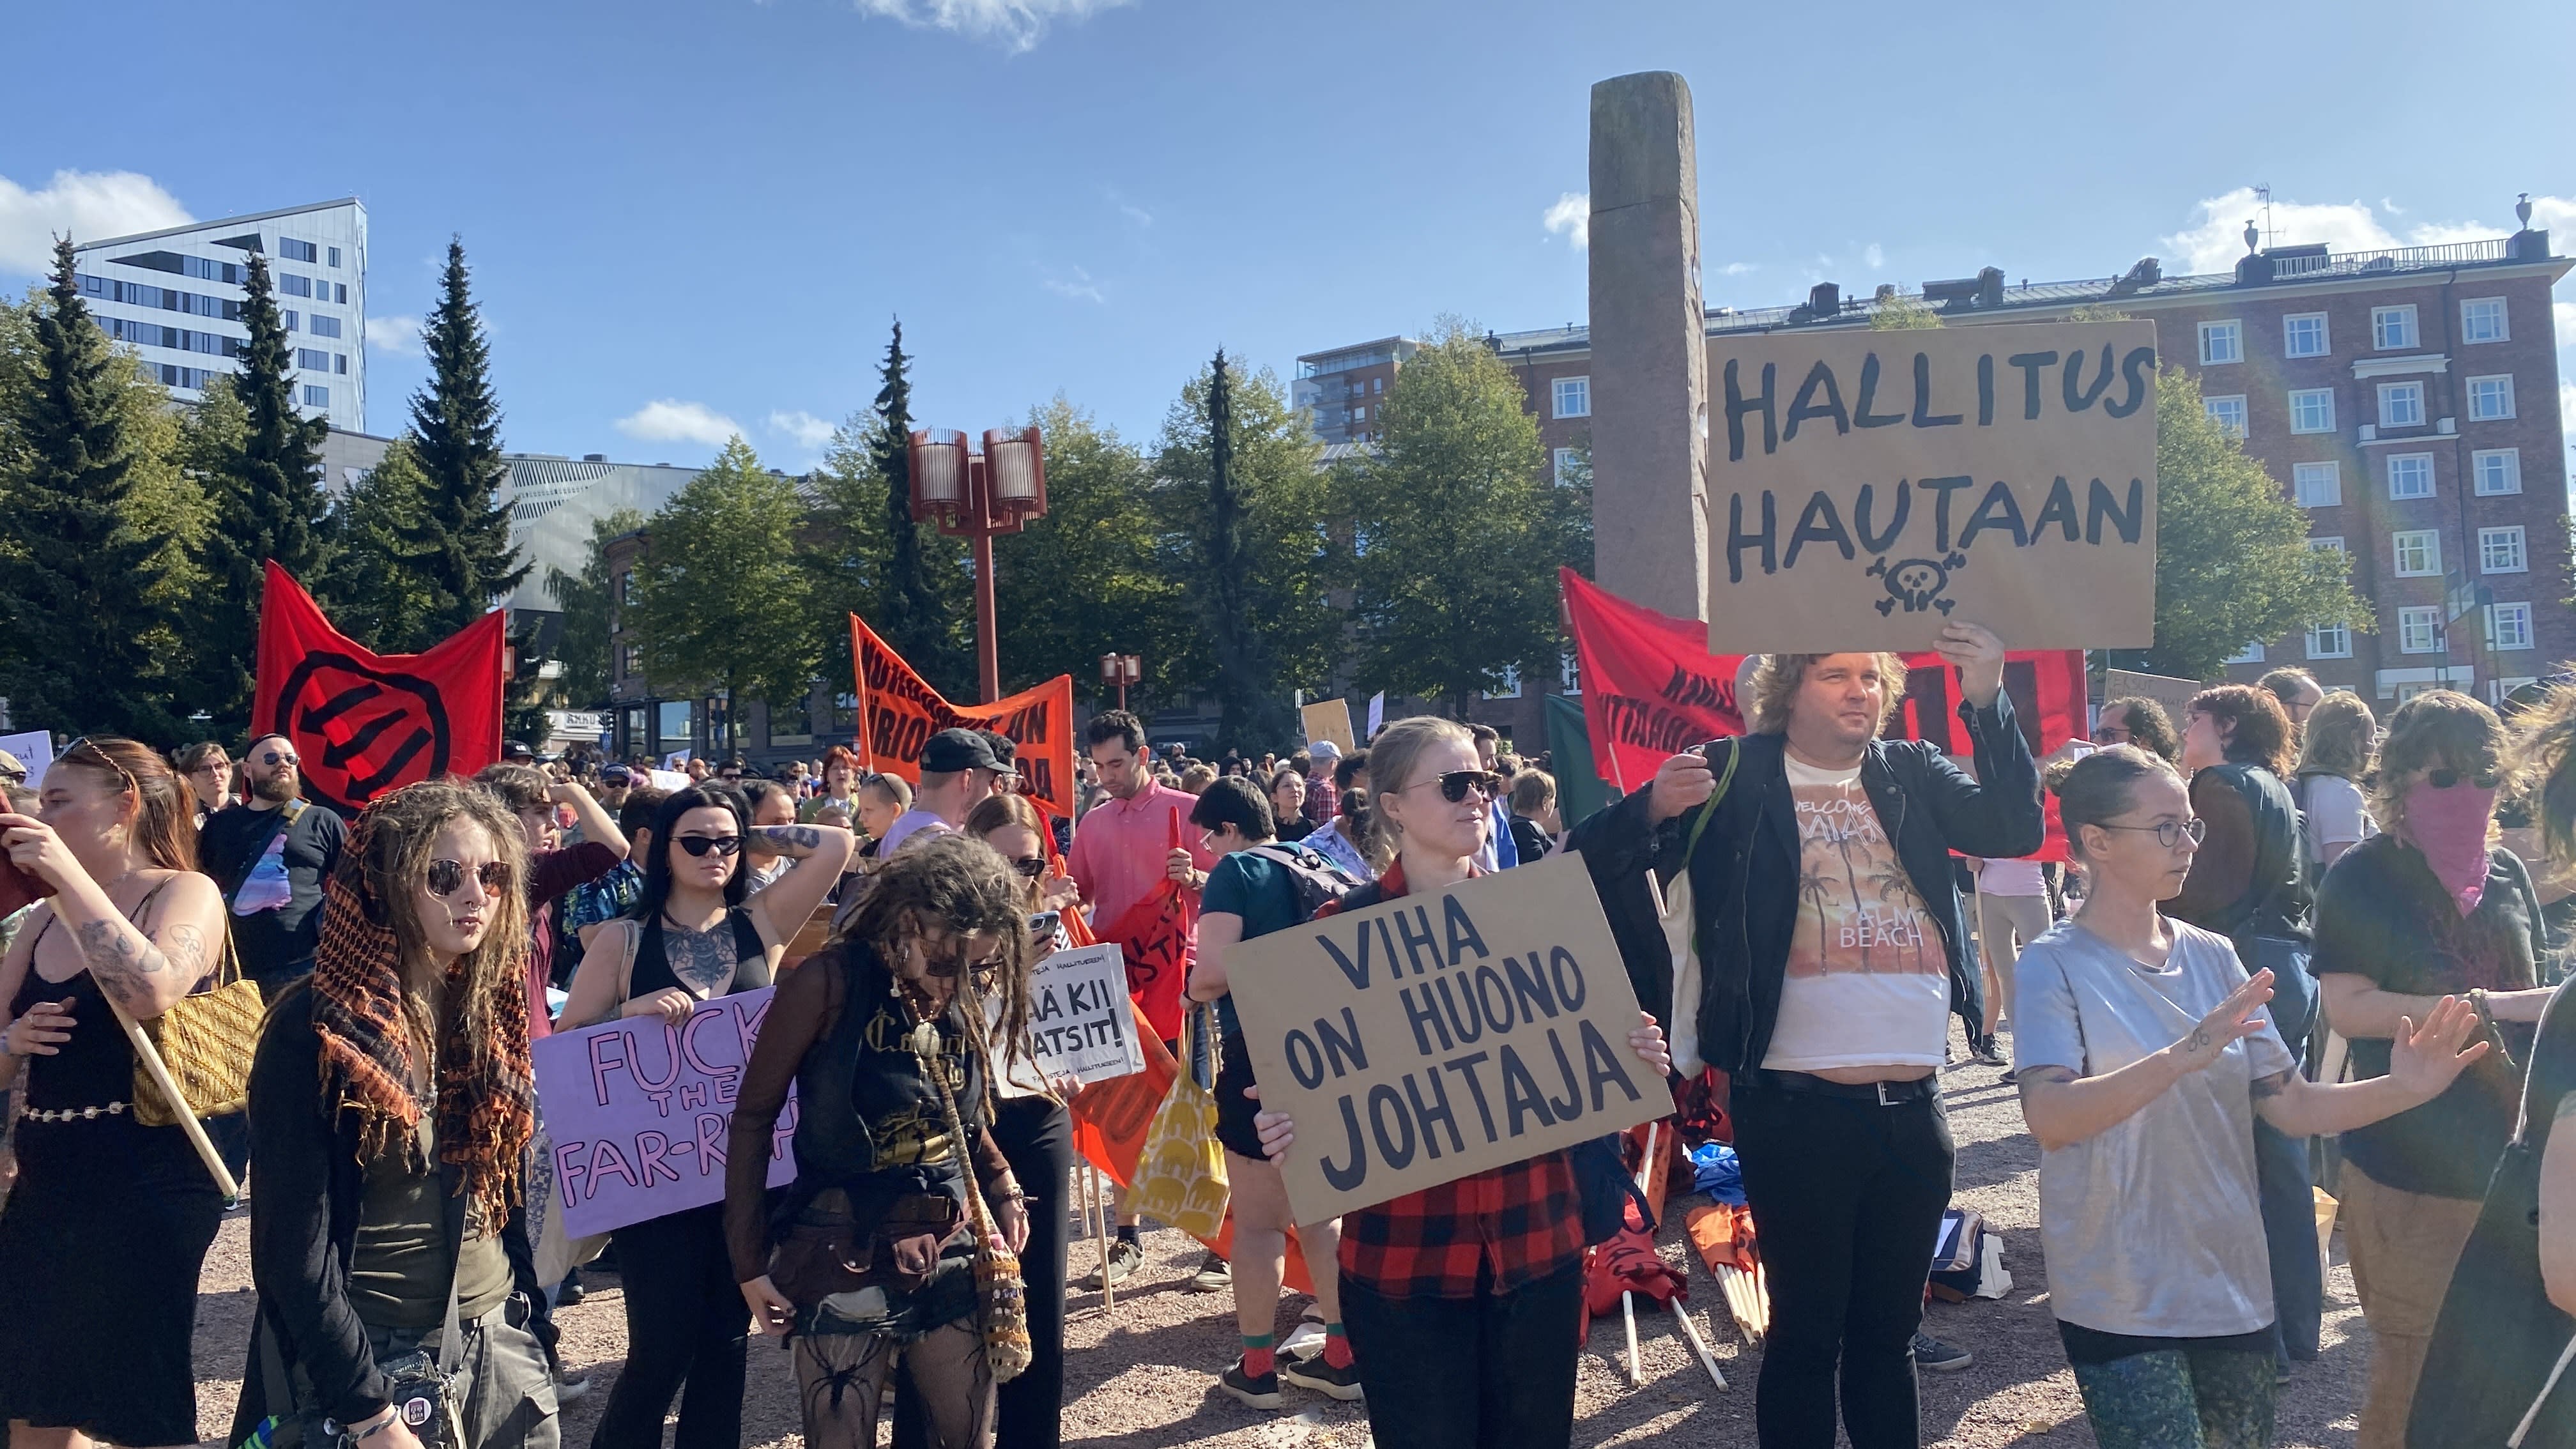 المزيد من الاحتجاجات ضد العنصرية والسياسات الحكومية في جميع أنحاء فنلندا في نهاية هذا الأسبوع